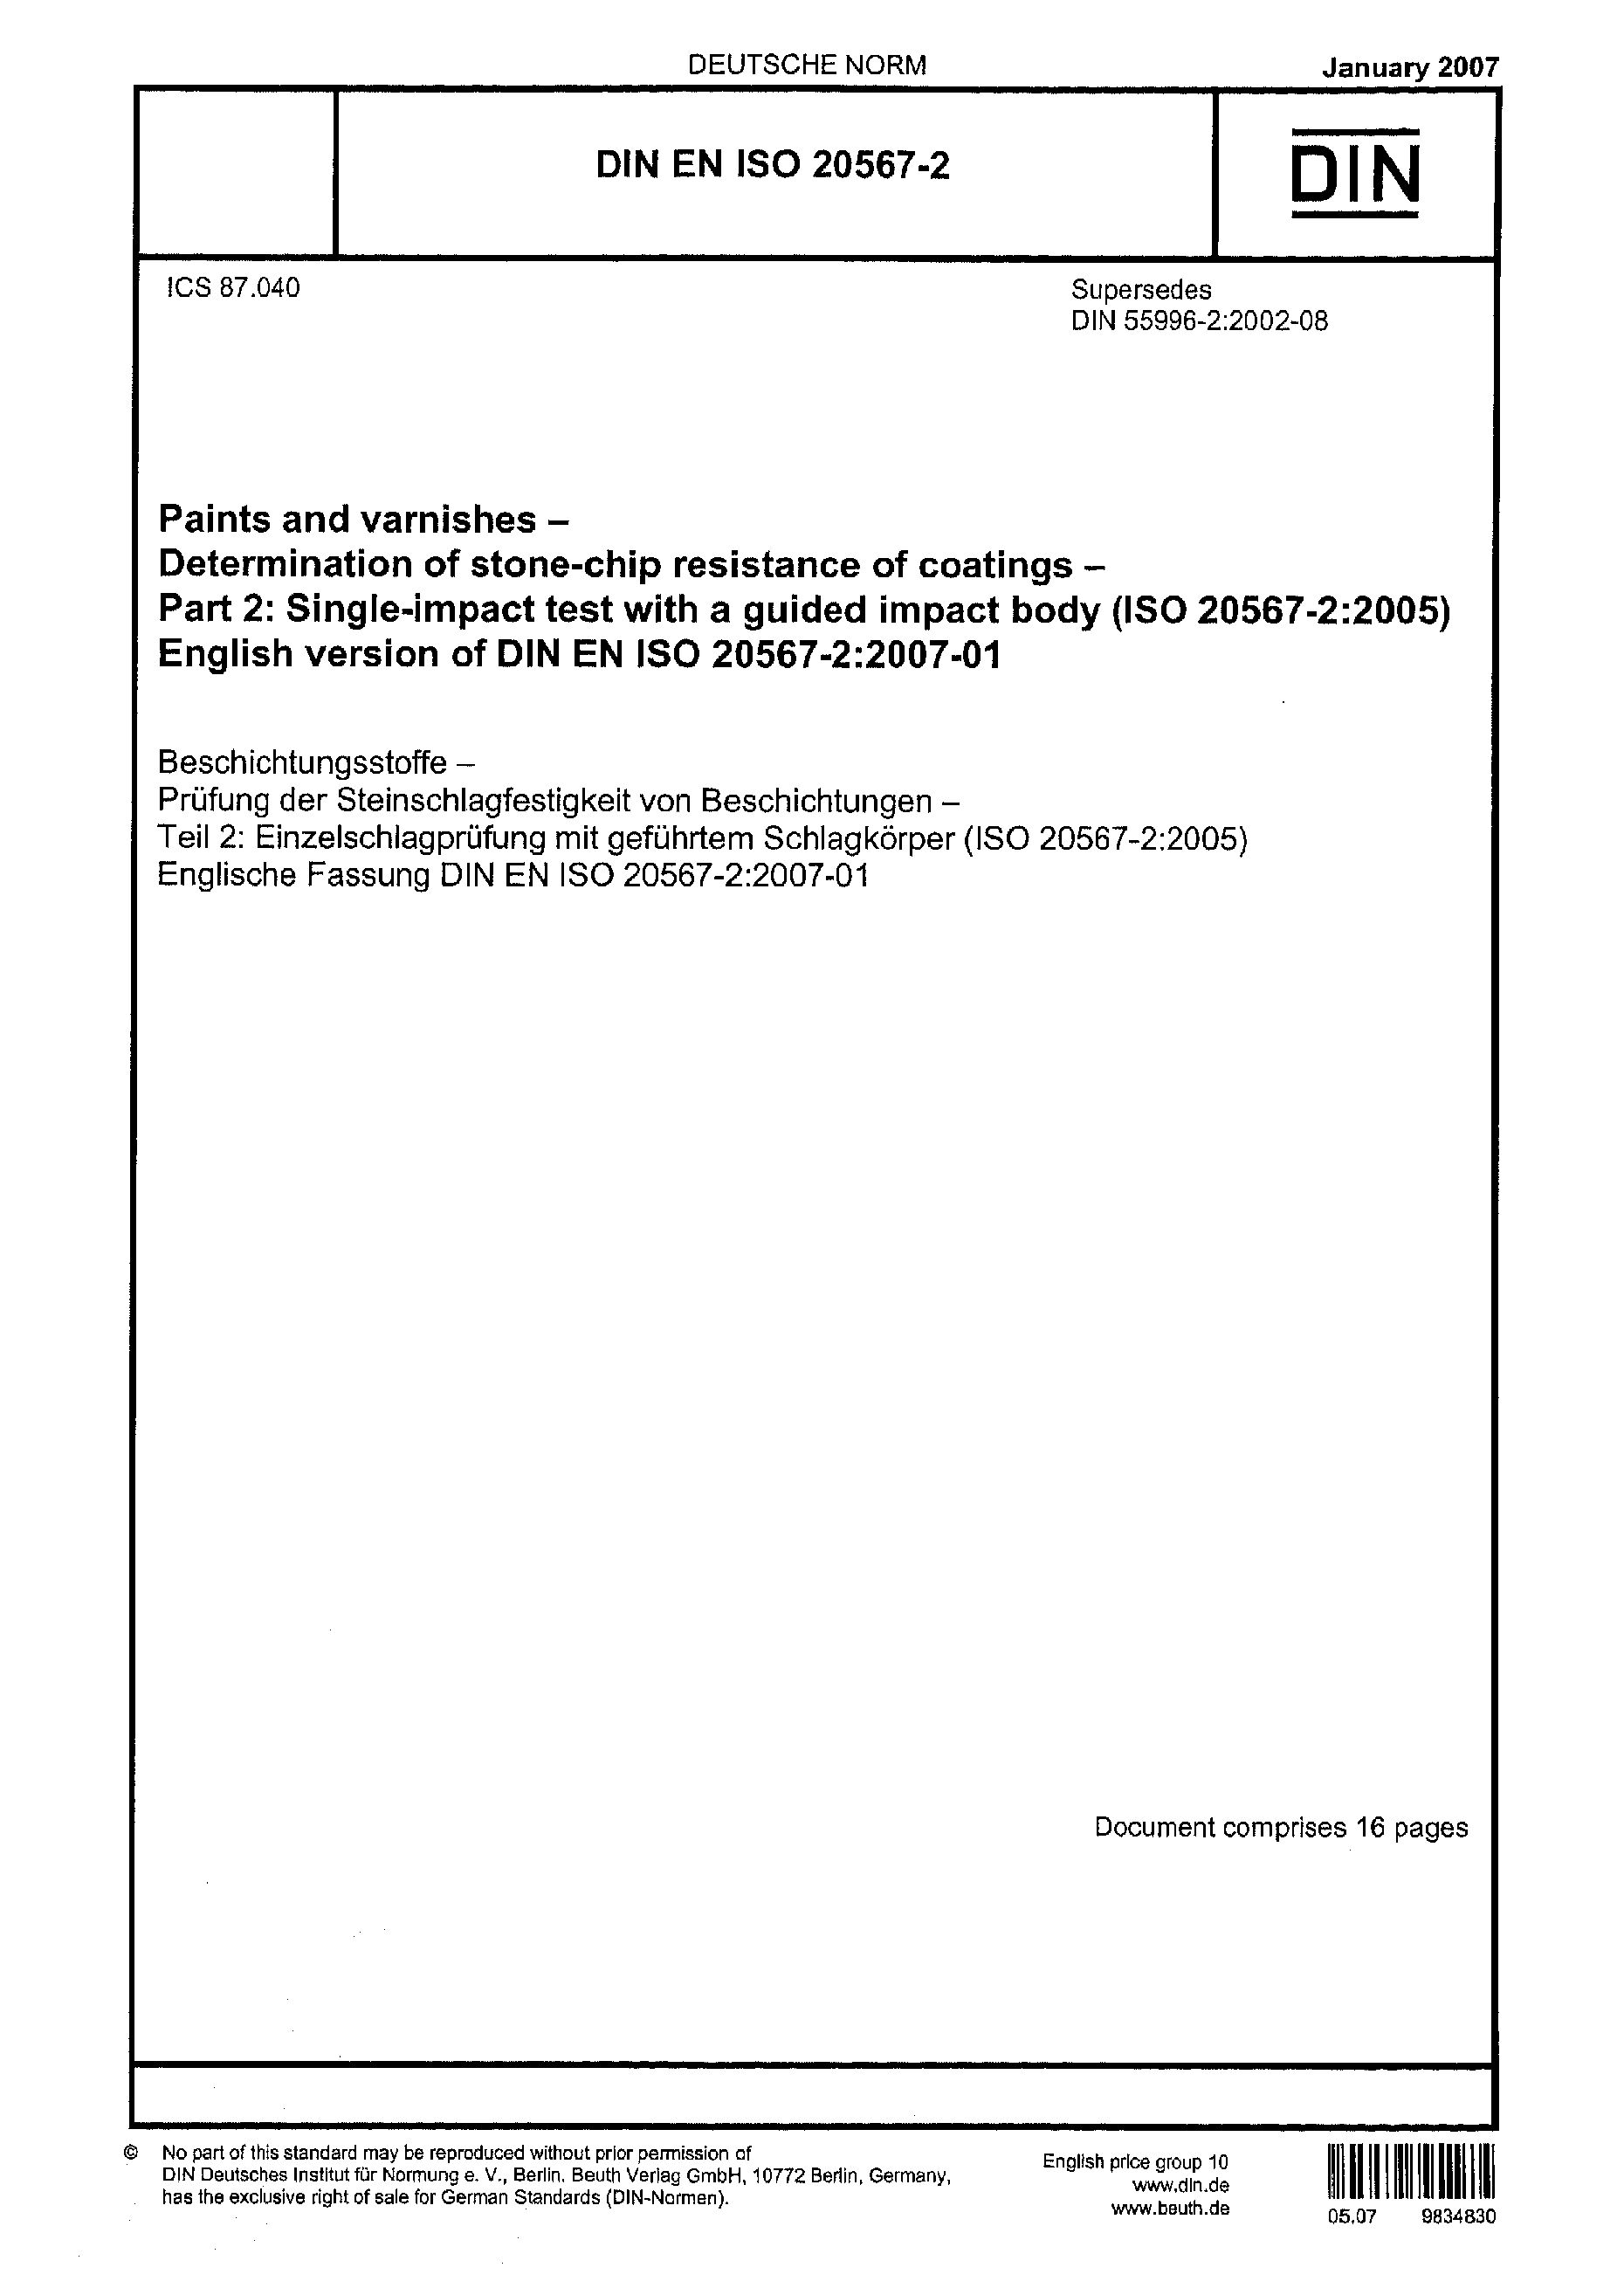 DIN EN ISO 20567-2:2007封面图